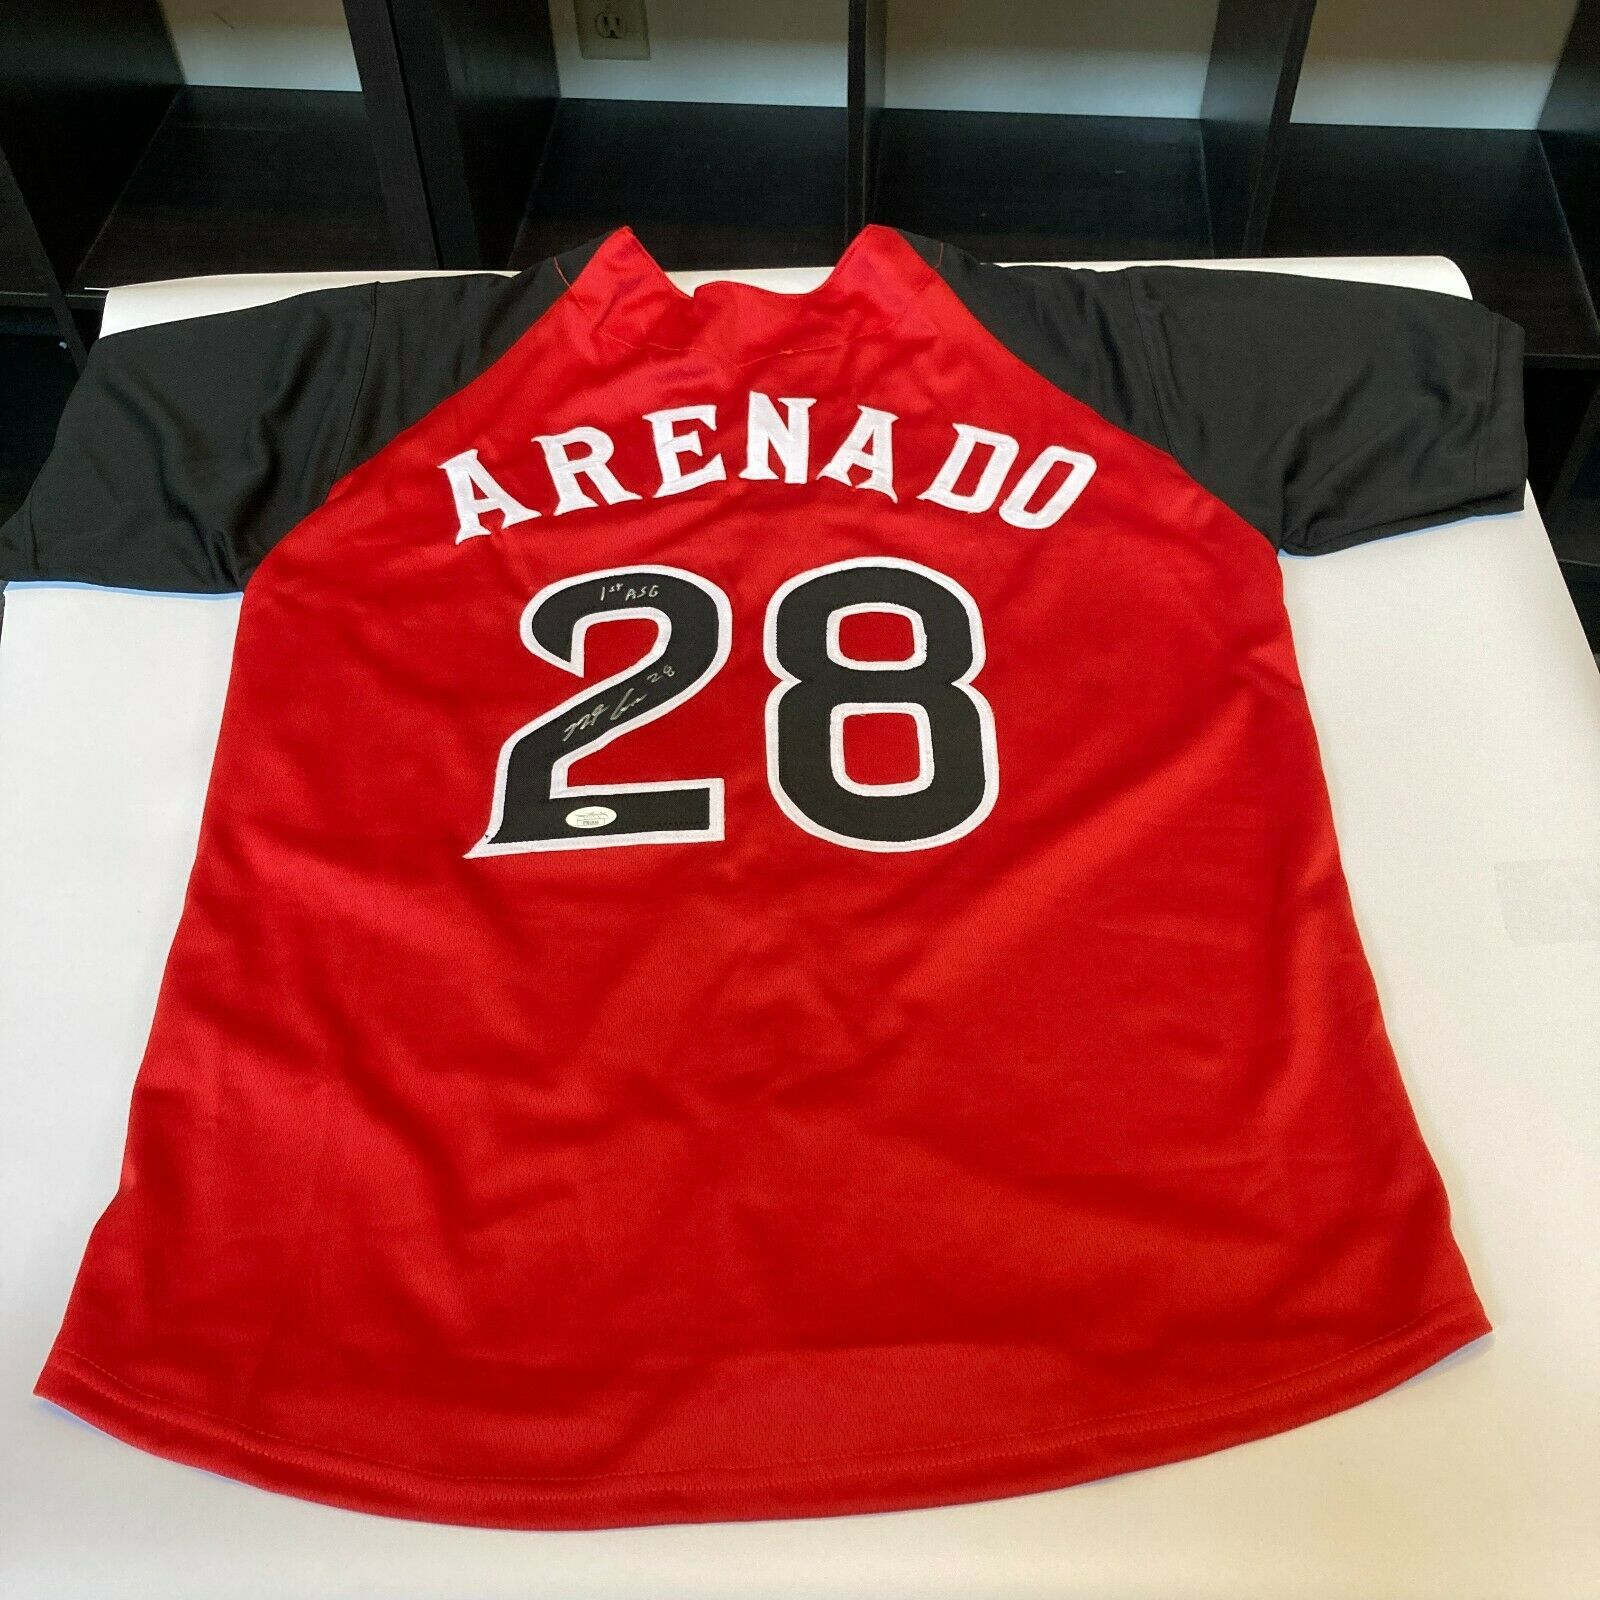 Nolan Arenado Nado Signed MLB All-Star Game Custom Jersey (JSA COA)